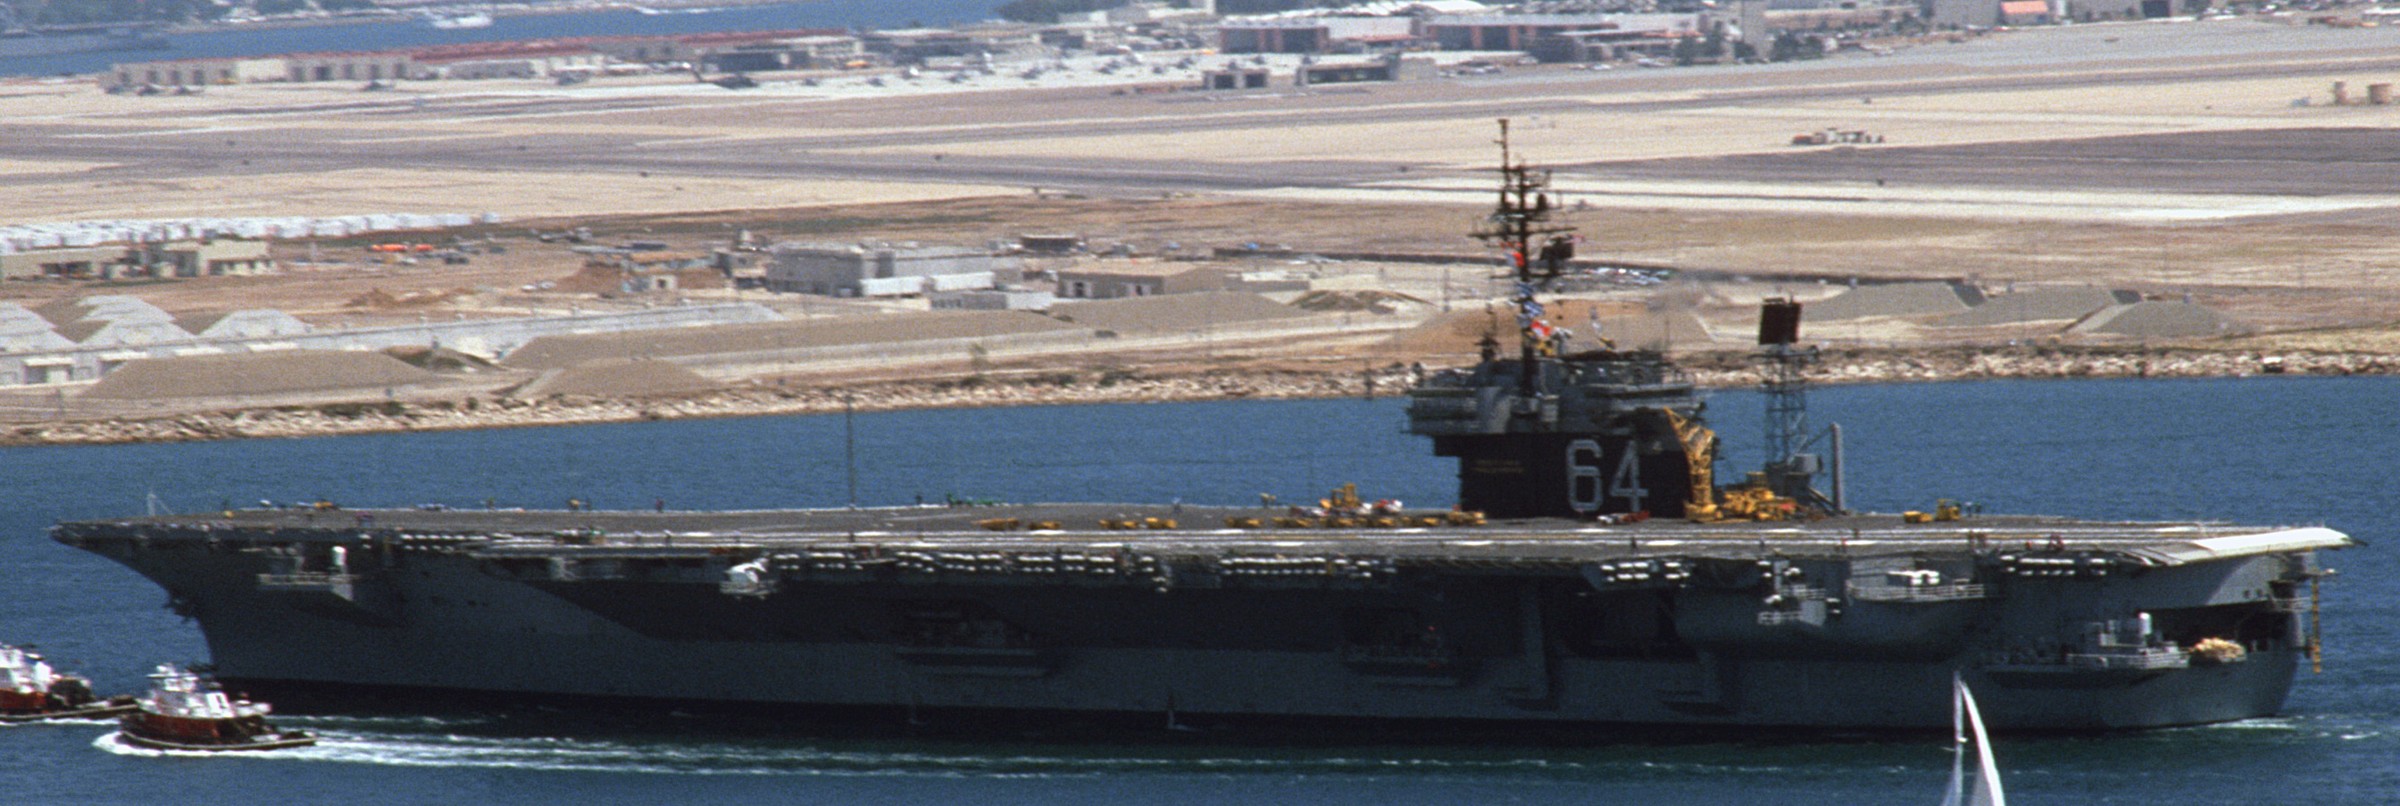 cv-64 uss constellation kitty hawk class aircraft carrier us navy 91